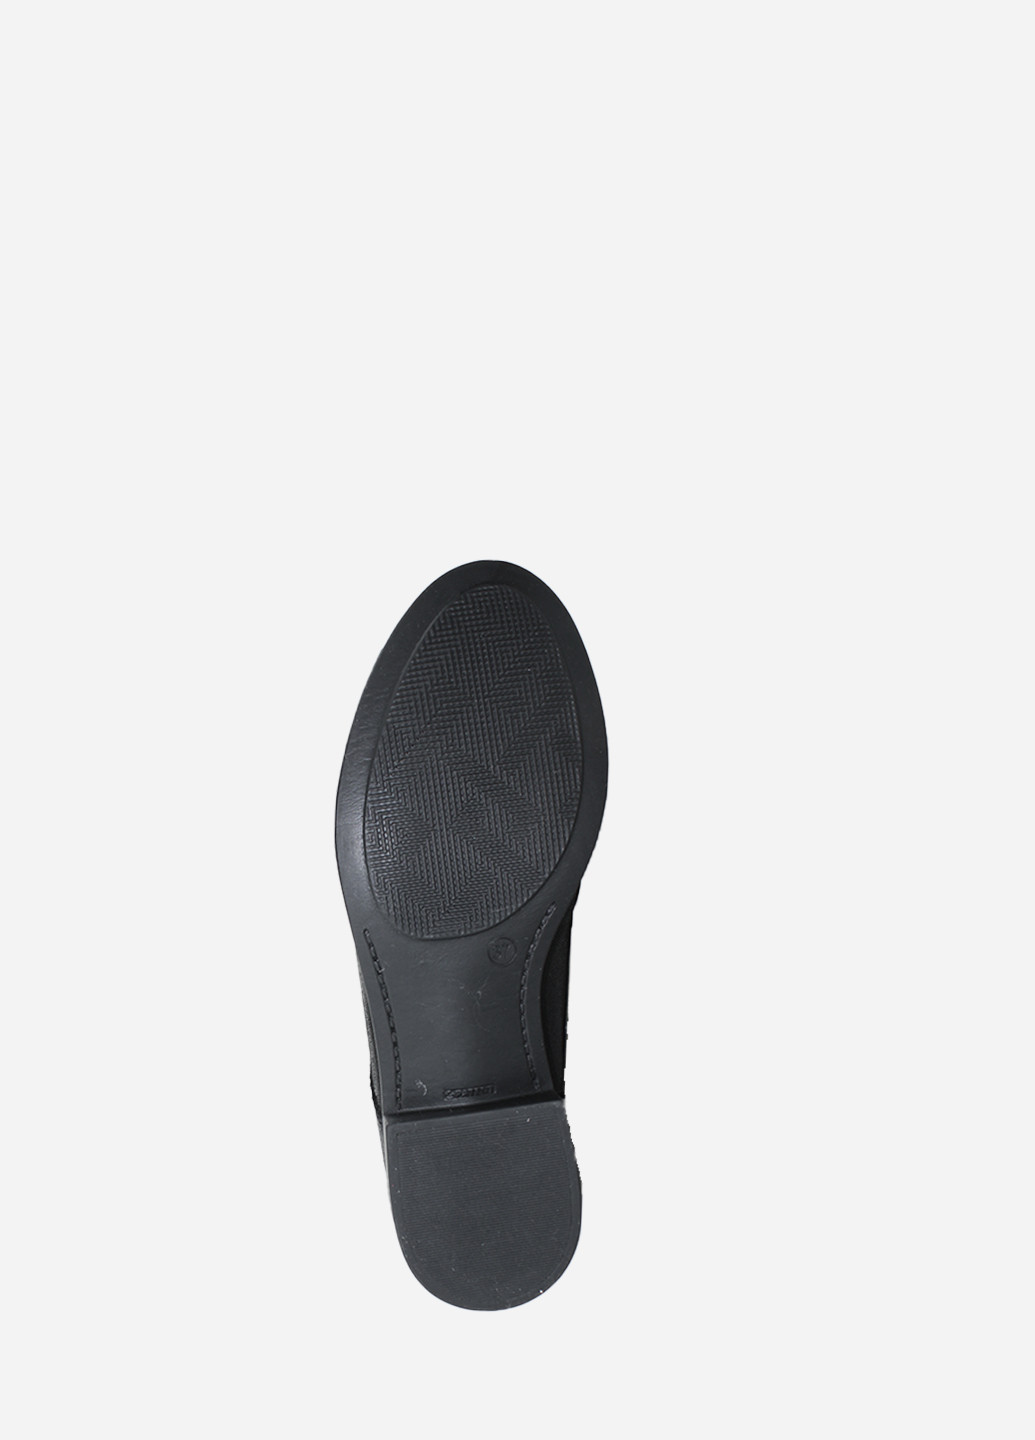 Осенние ботинки rd963 черный Digsi